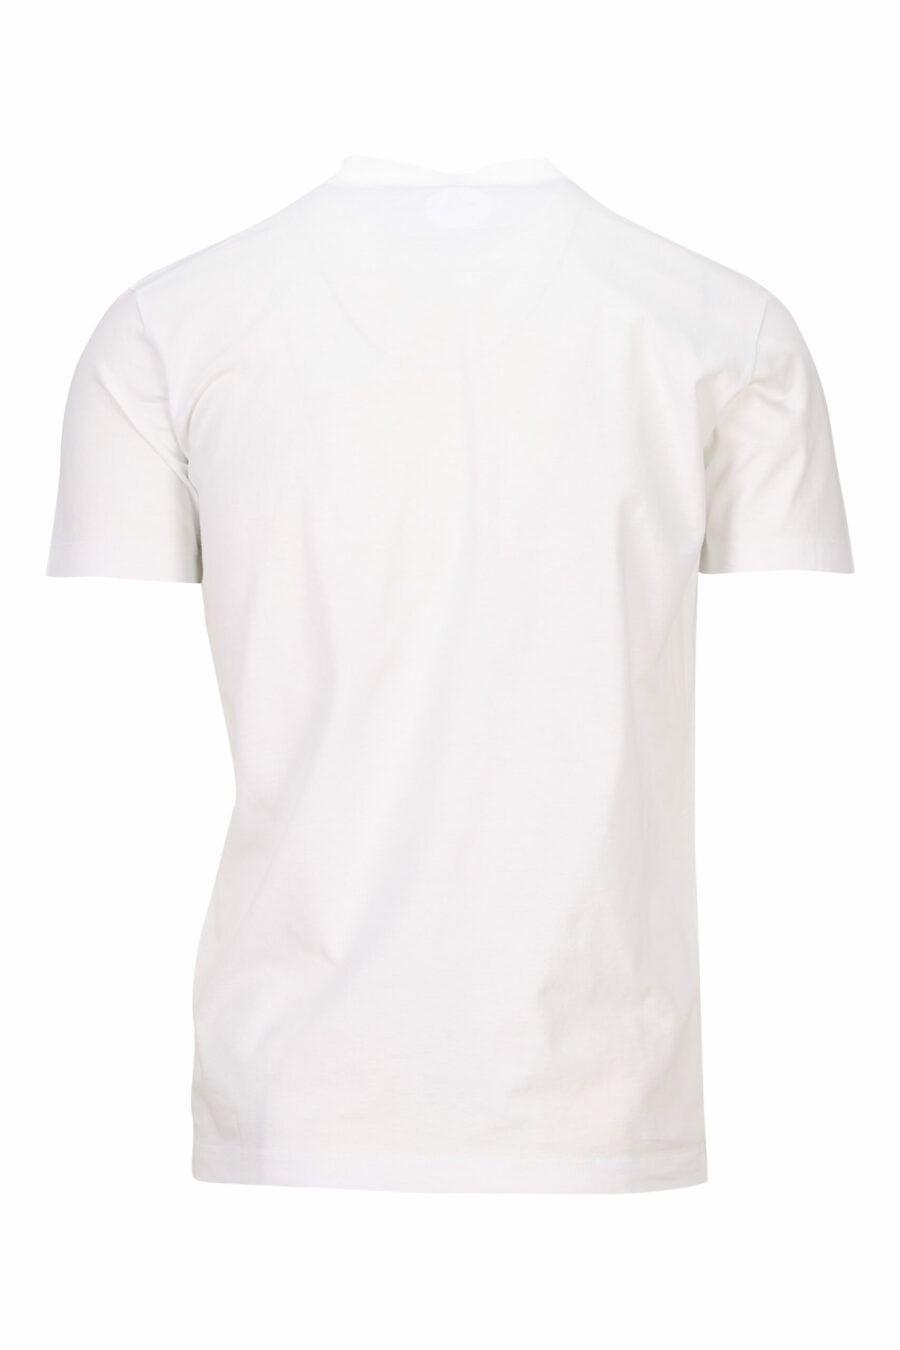 Weißes T-Shirt mit Basketball Hund maxilogo - 8054148332594 1 skaliert